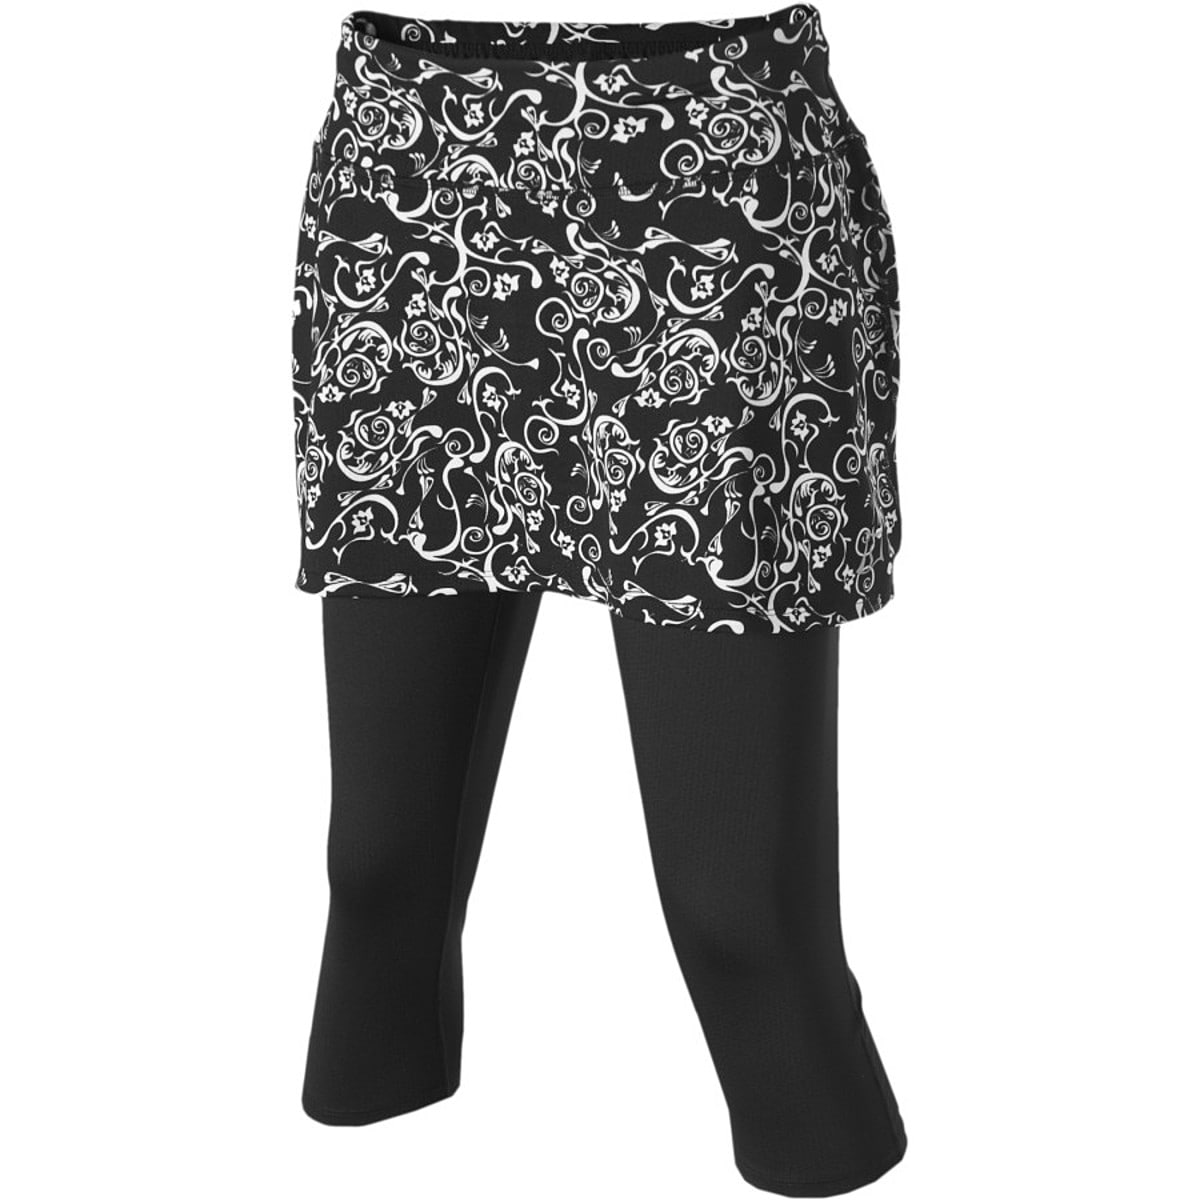 Skirt Sports Lotta Breeze Capri Skirt - Women's - Clothing